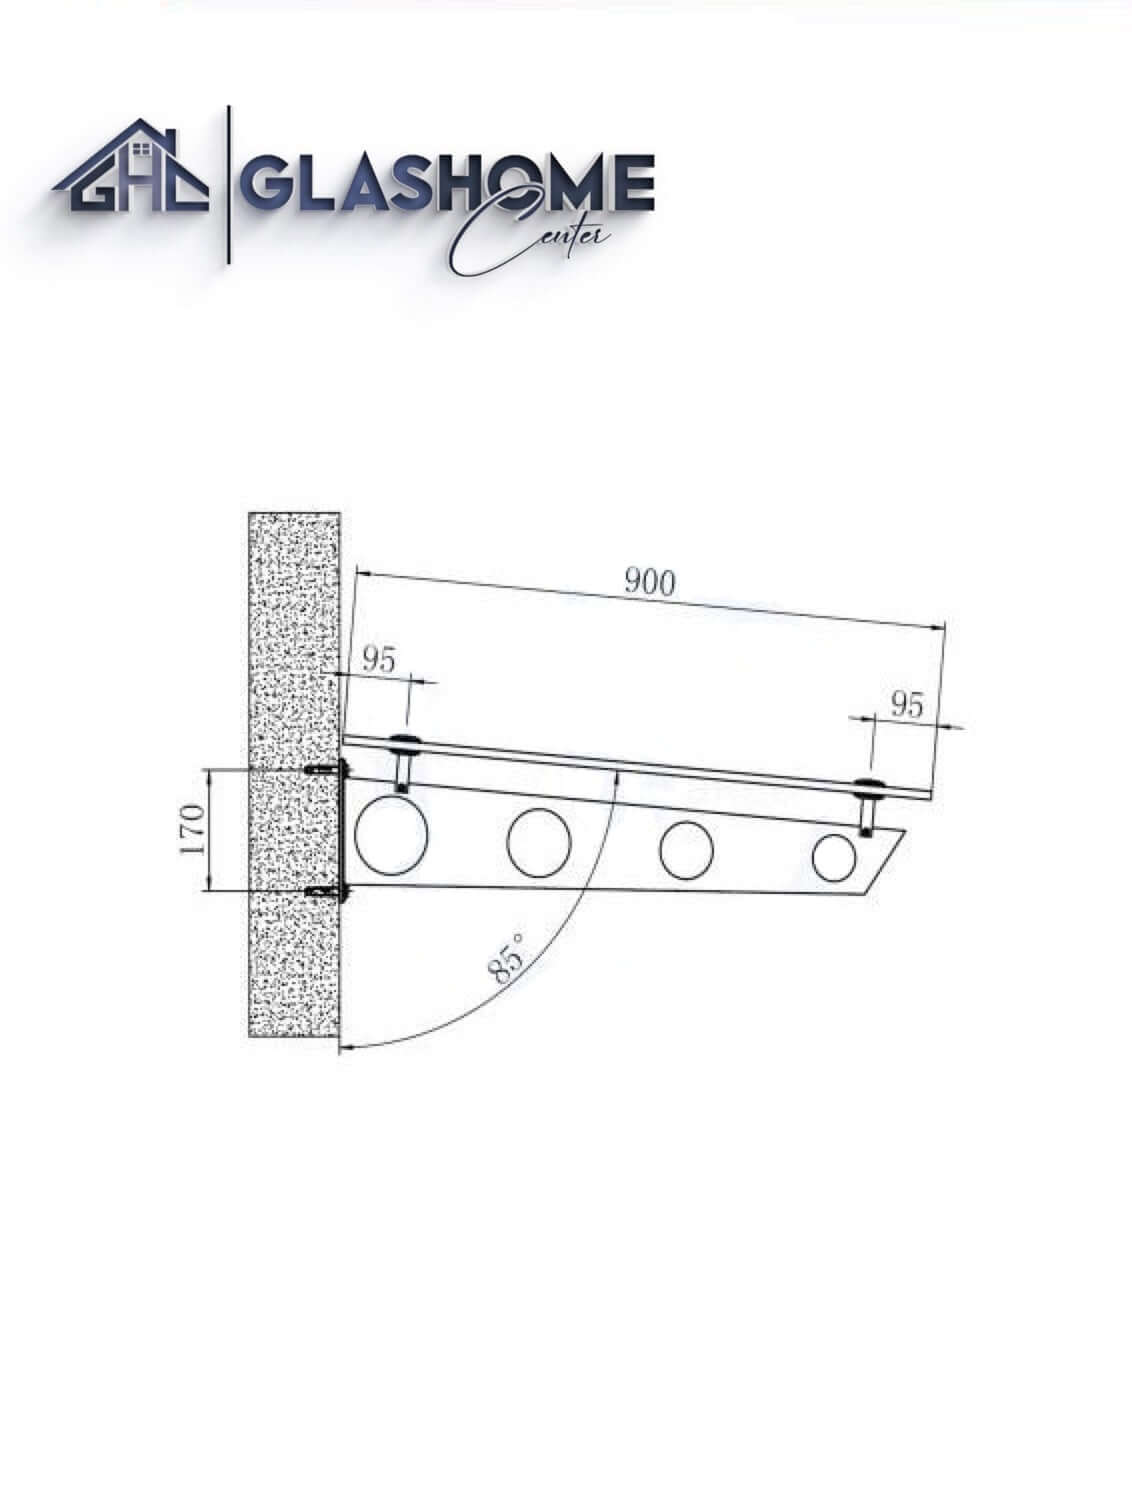 GlasHomeCenter - Glasvordach - Grauglas - 120x90cm - 13.1mm VSG - incl. 2 Edelstahlhalterungen variante "Stoccolma"